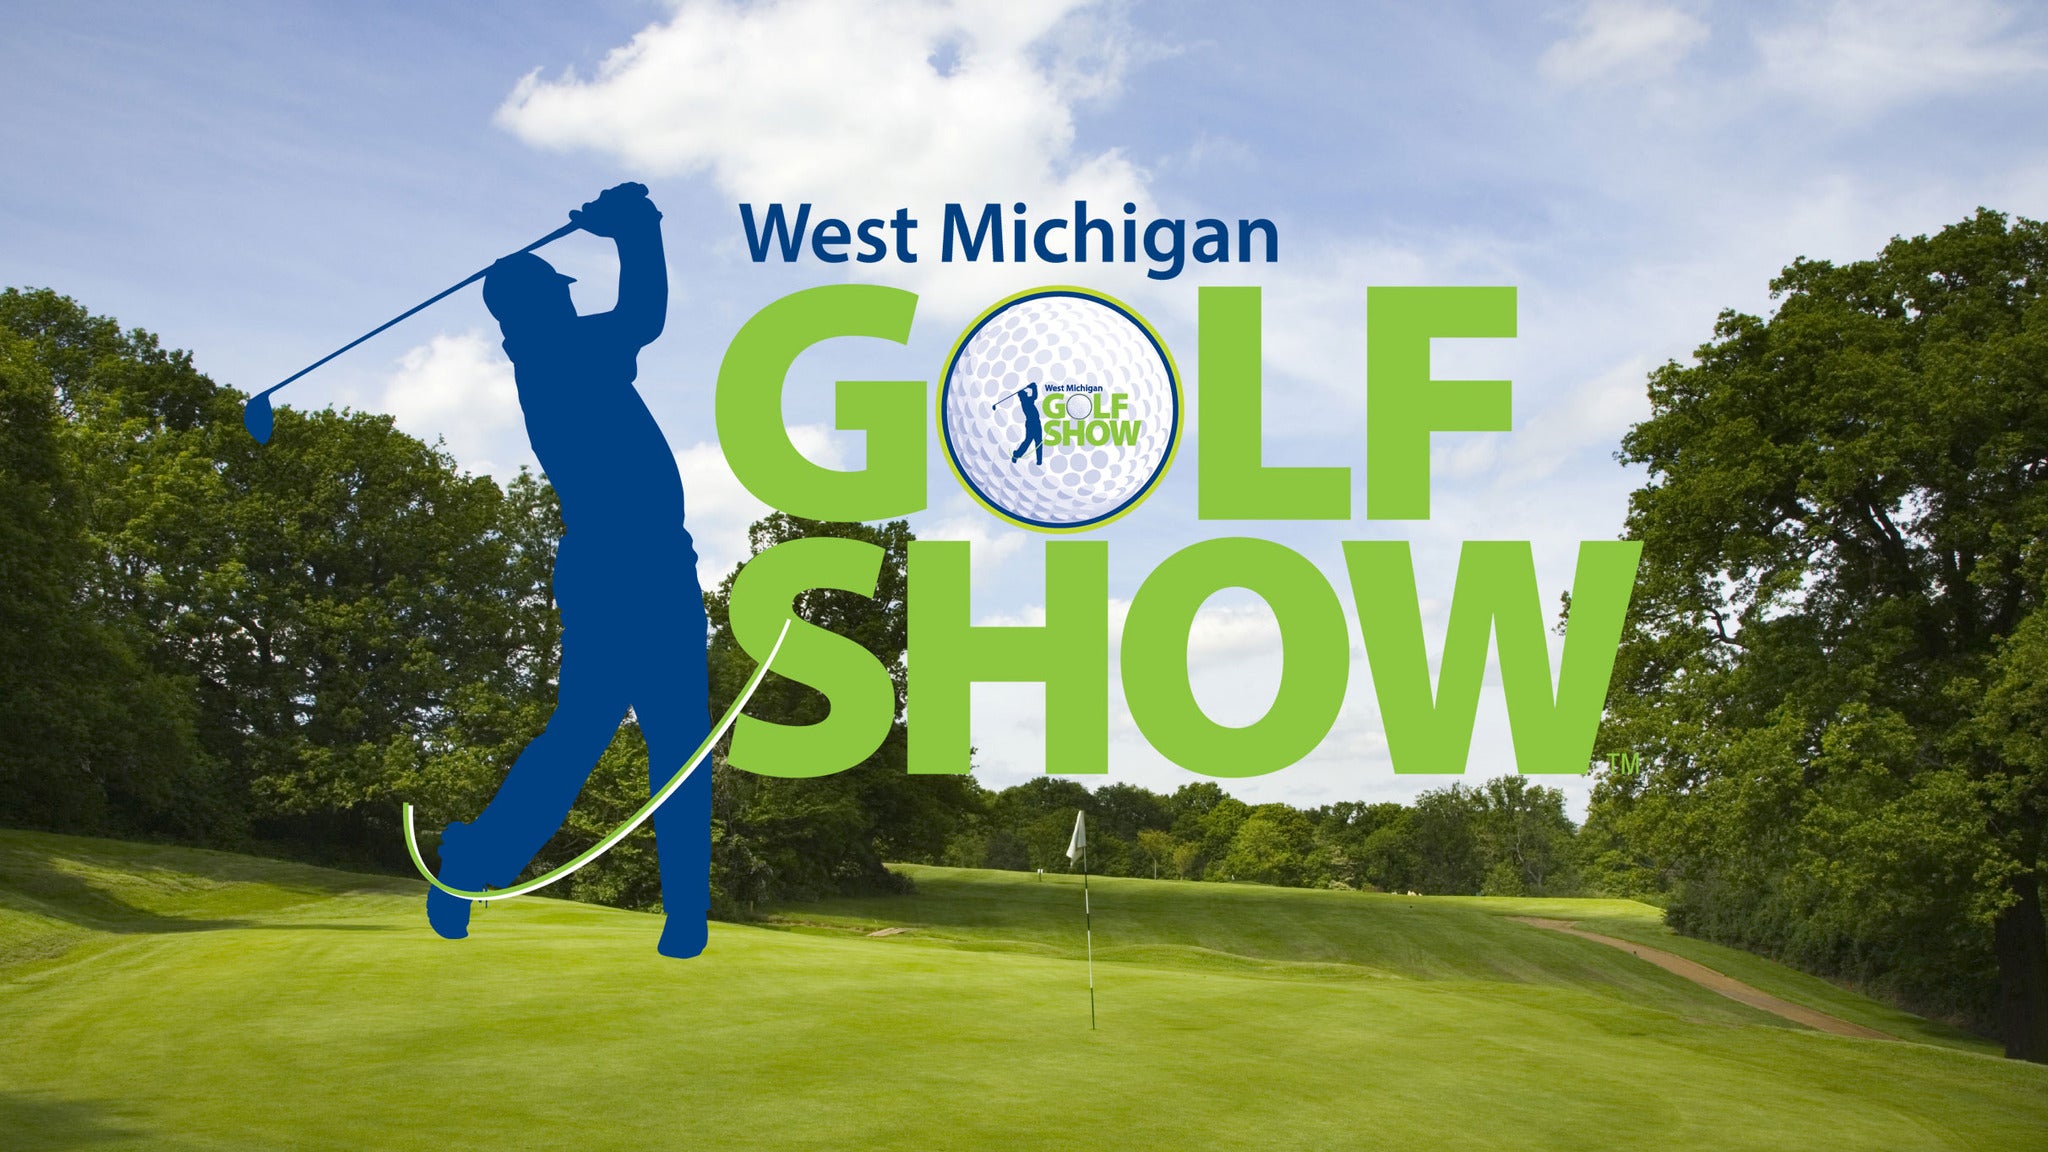 West Michigan Golf Show Tickets Event Dates & Schedule